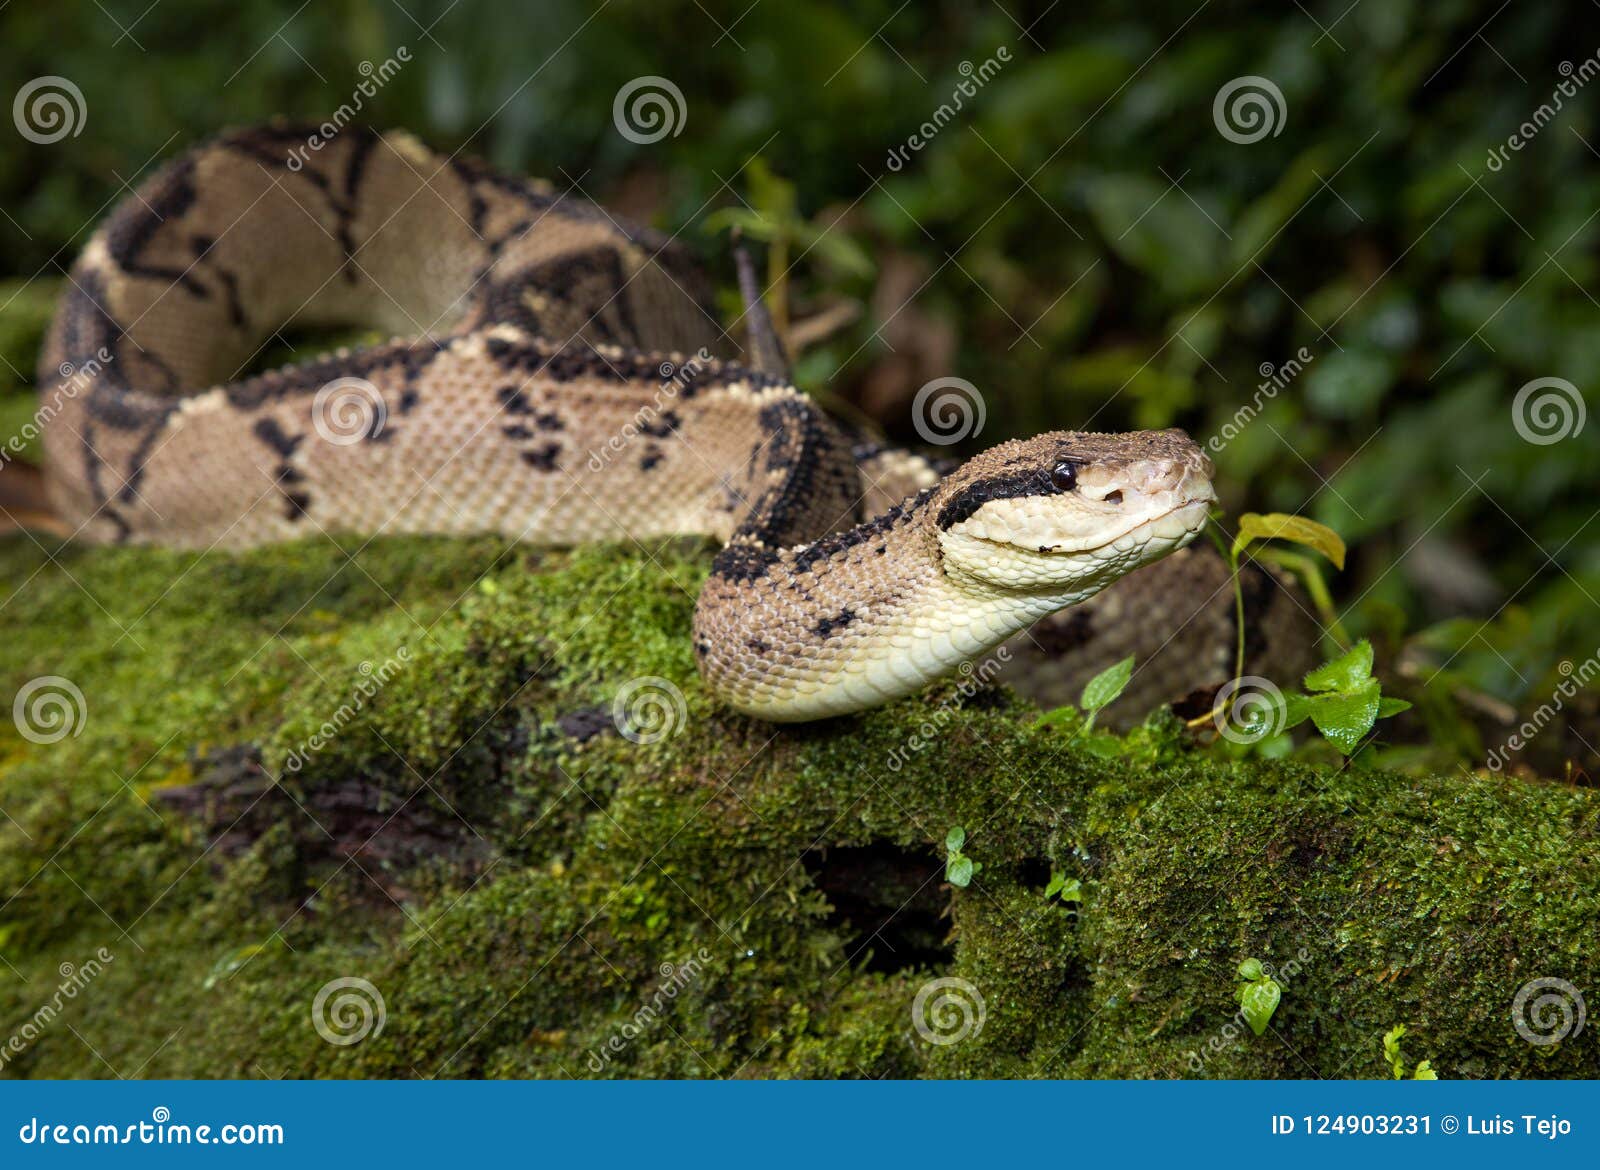 a bushmaster venomous snake